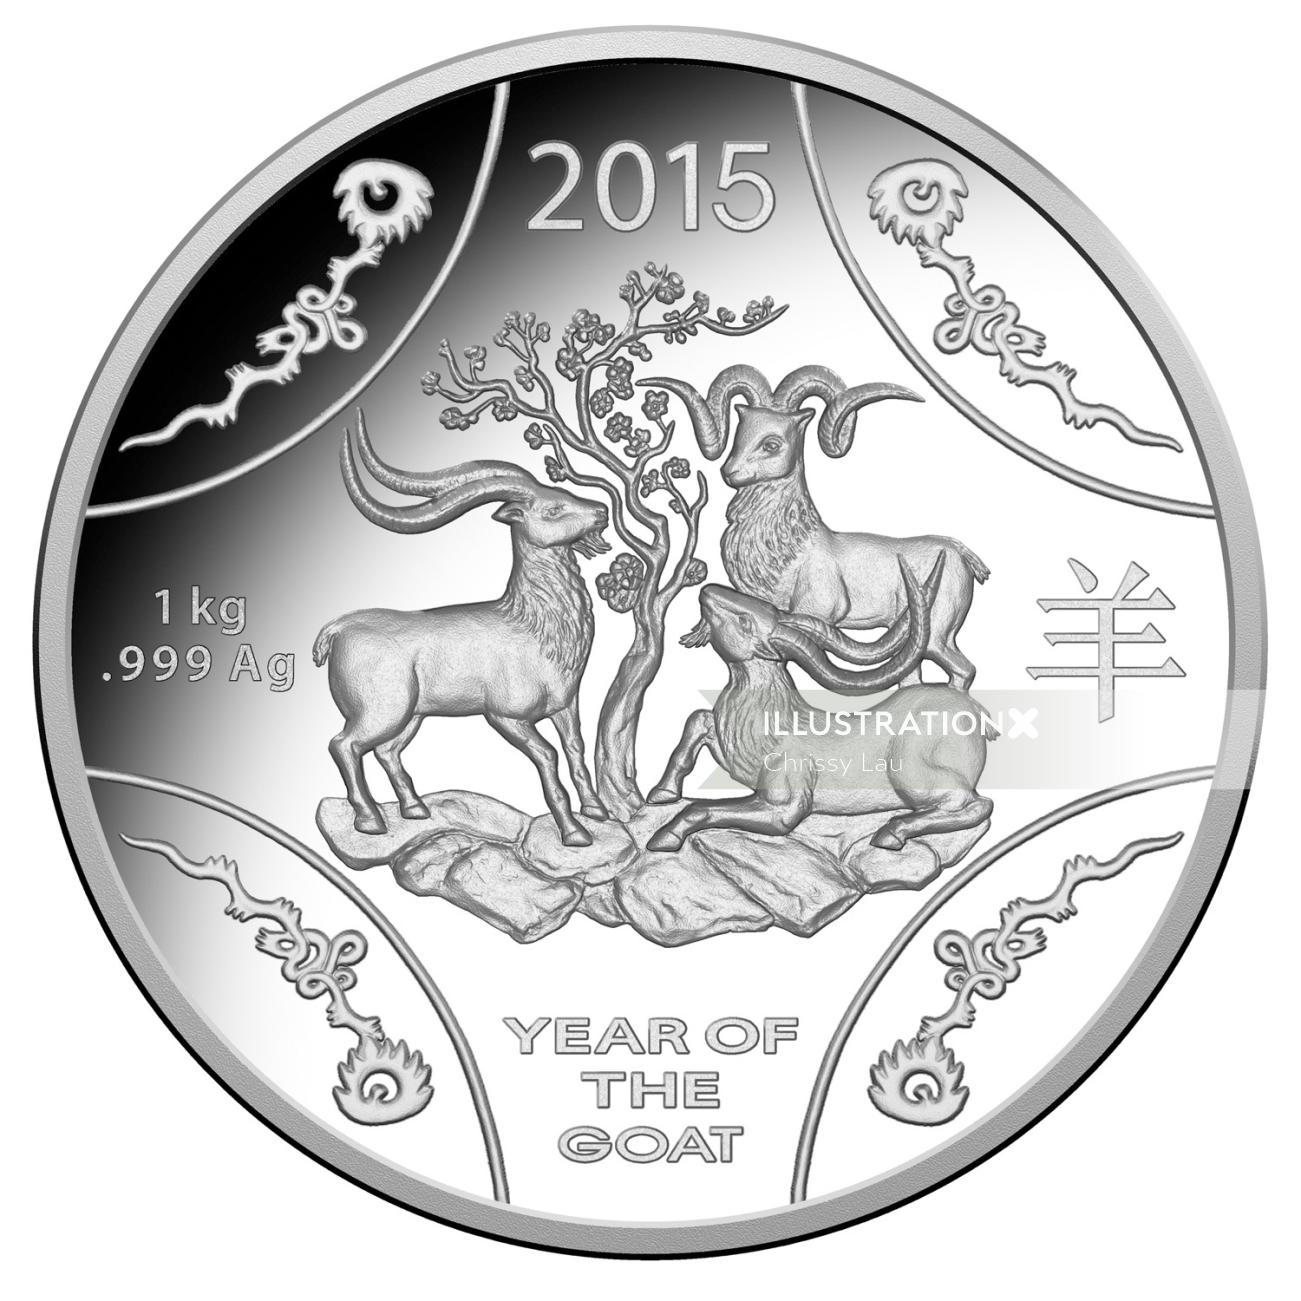 Projeto preto e branco da moeda chinesa de 2015